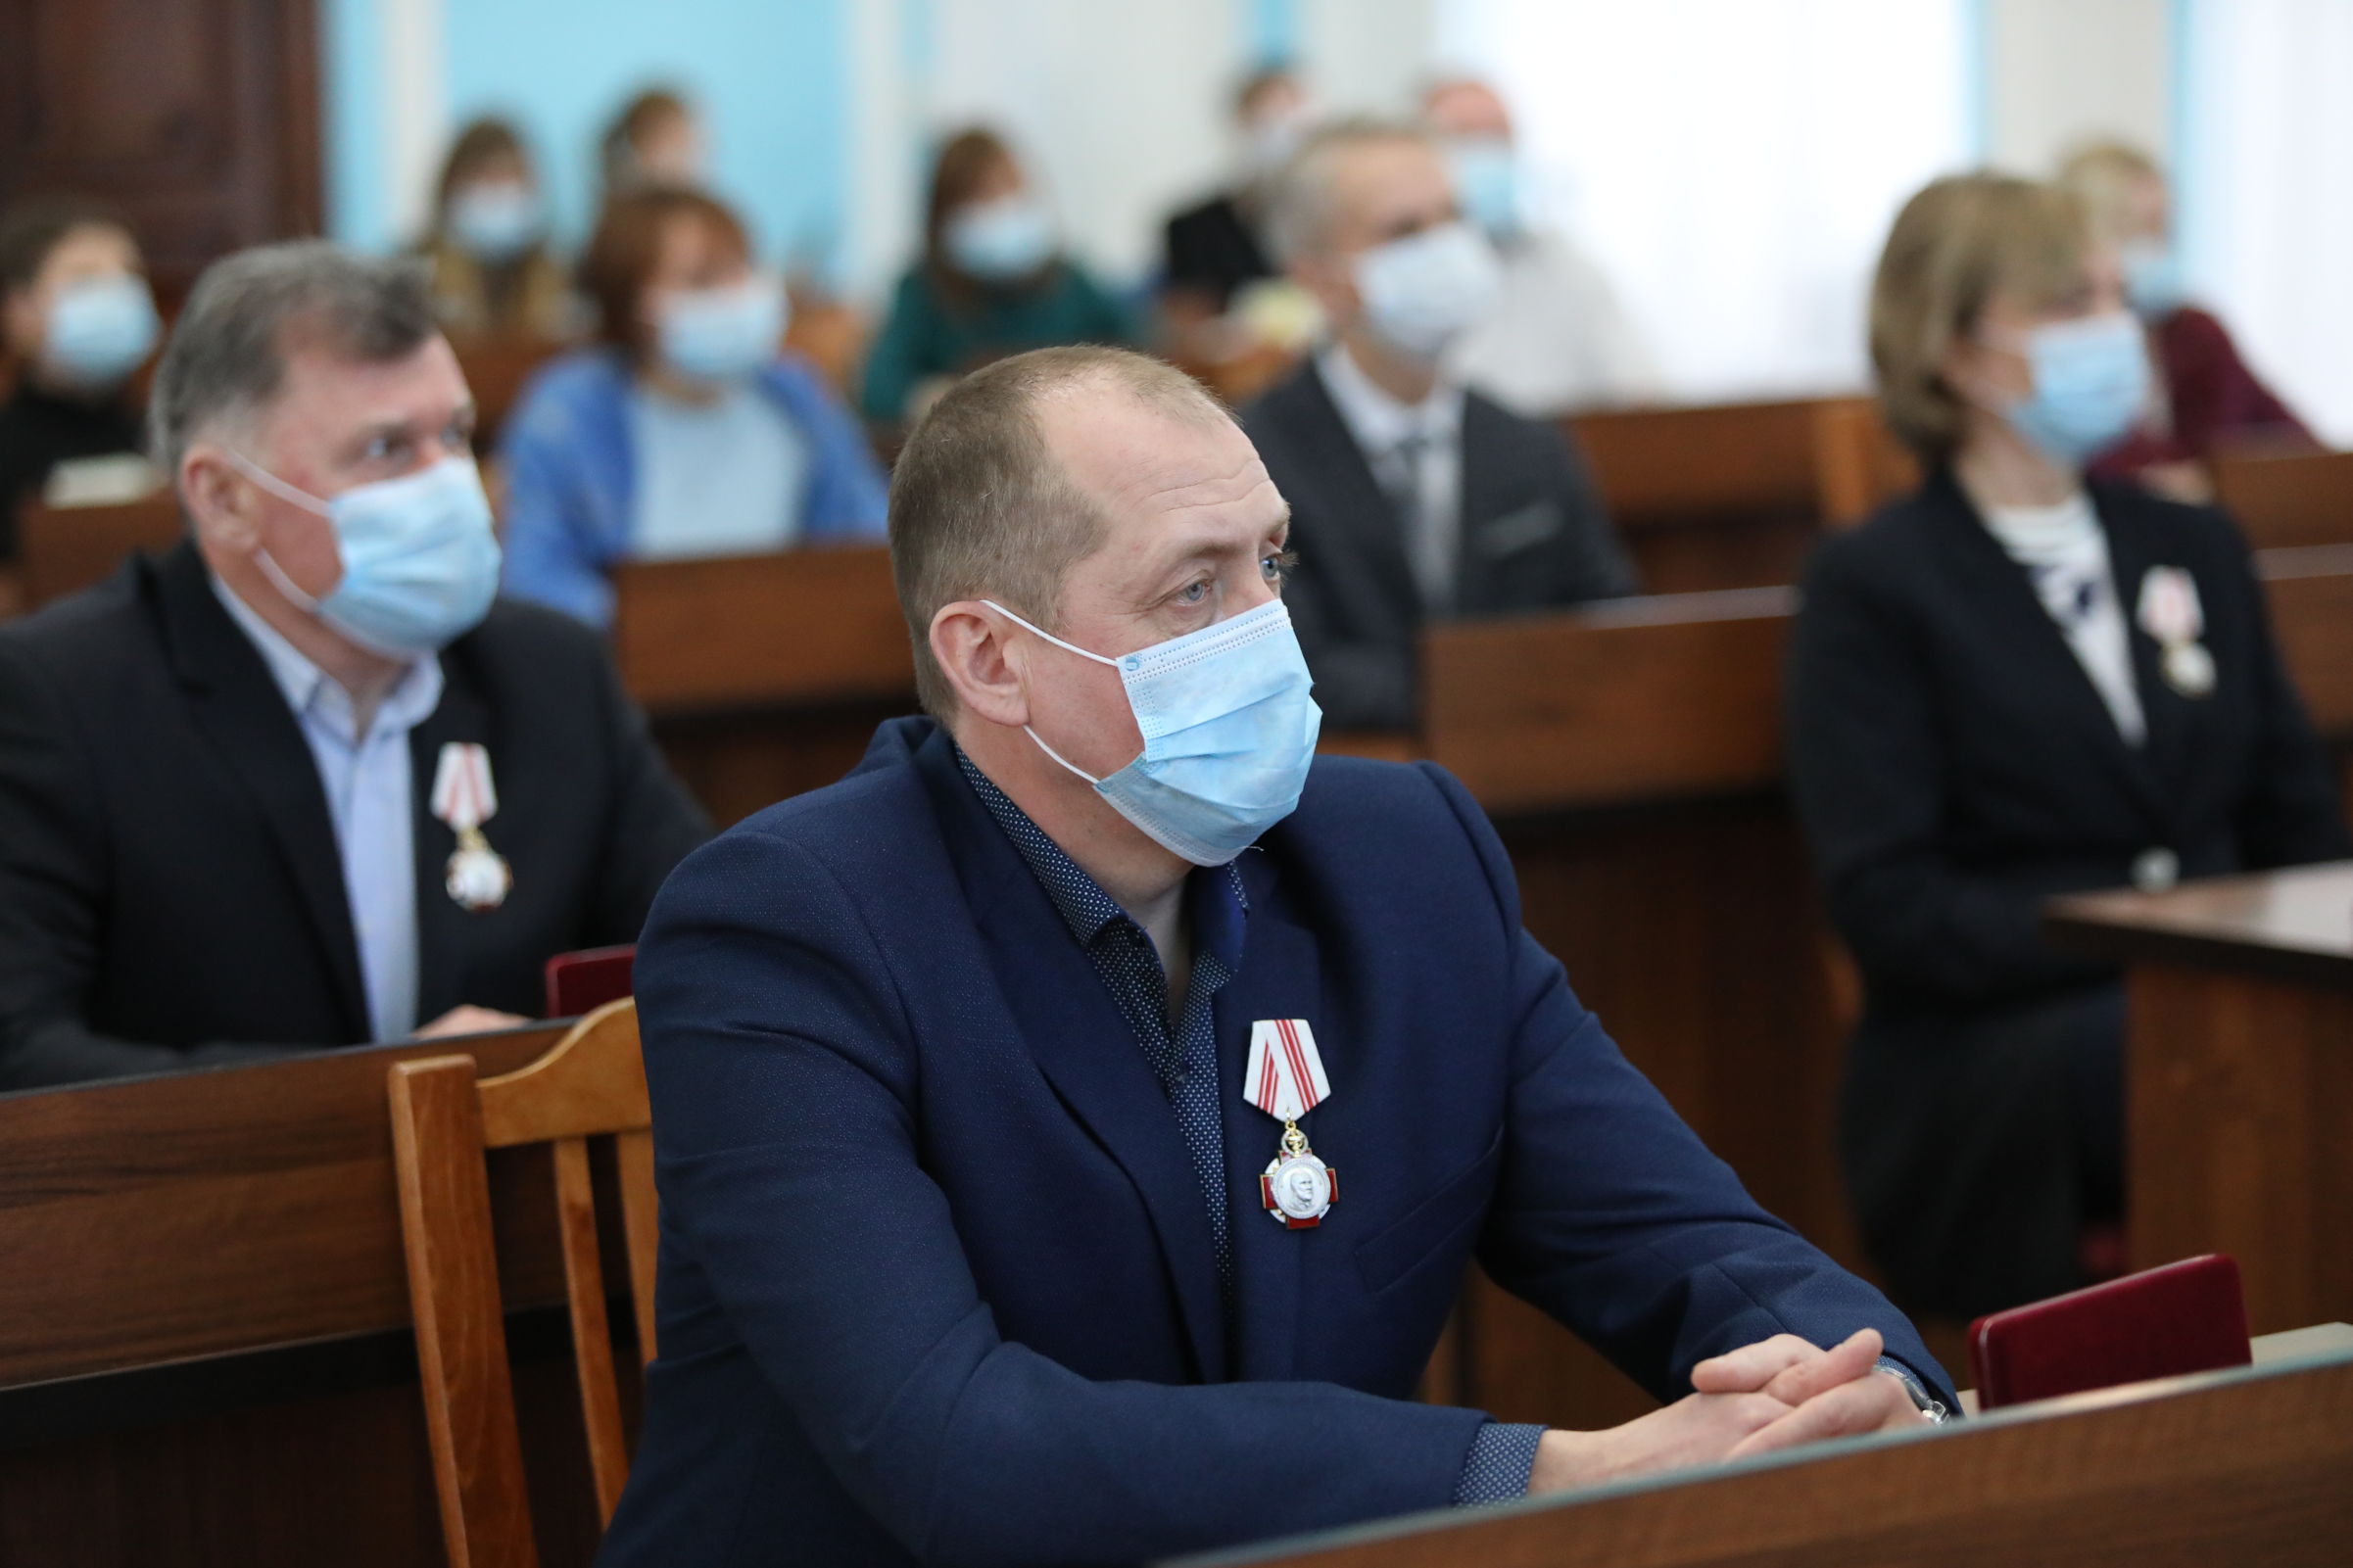 Губернатор области Дмитрий Миронов и министр здравоохранения Михаил Мурашко наградили врачей, работающих в красной зоне